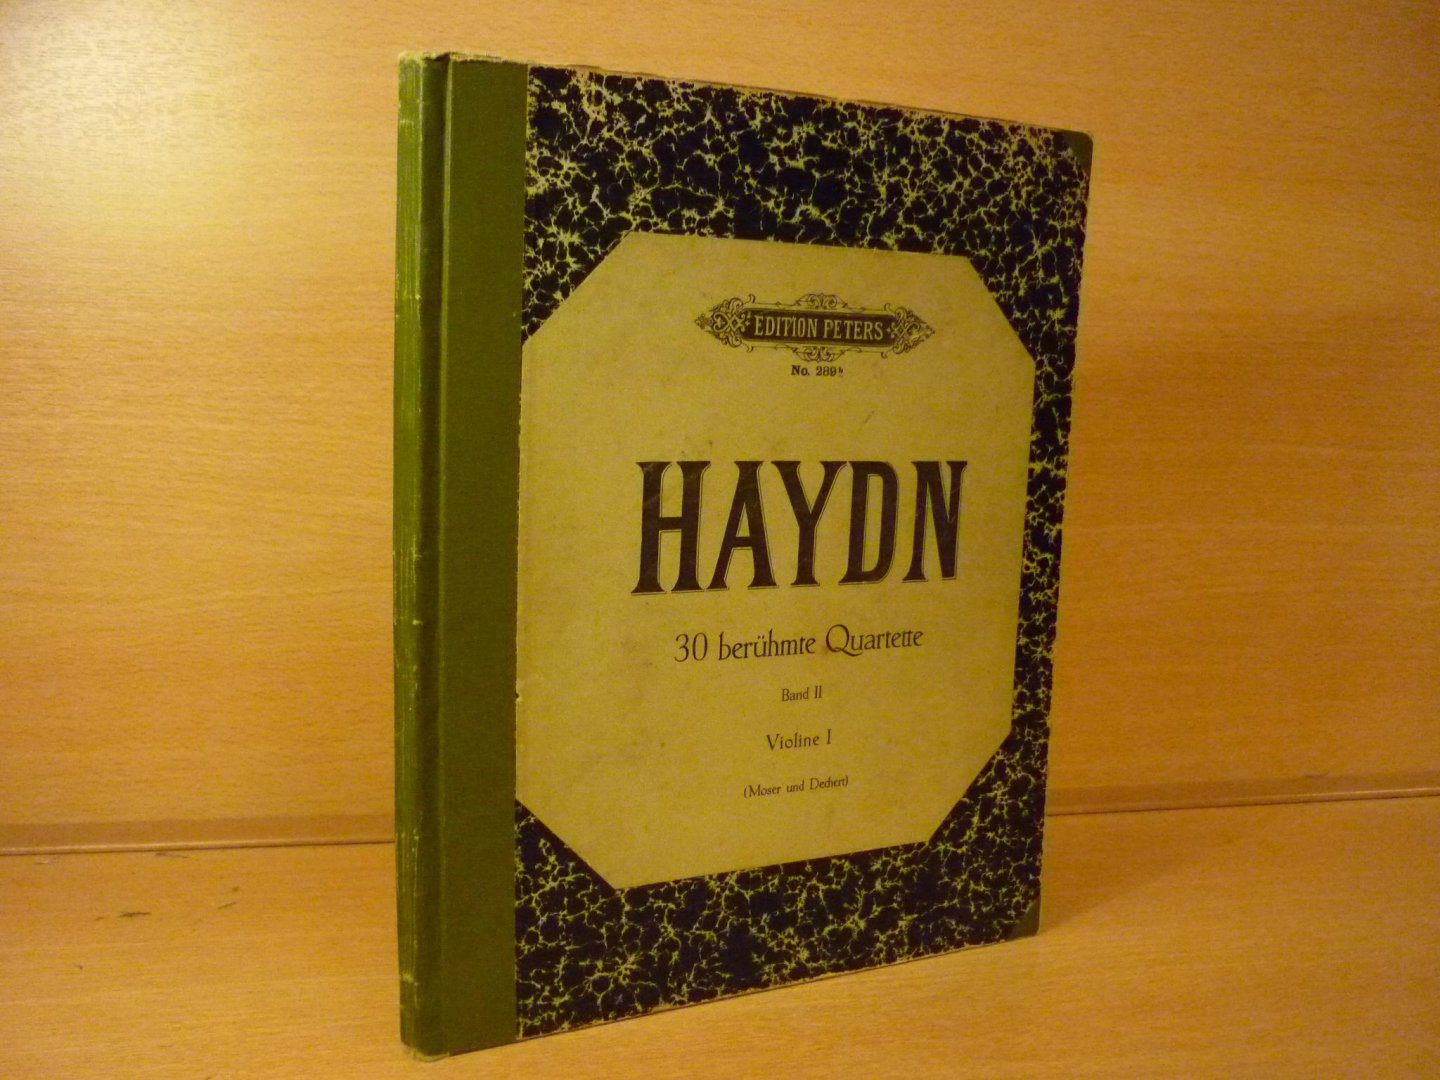 Haydn; Franz Joseph (1732-1809) - 30 beruhmte Quartette (Band II: Quartett XV t/m XXX); 2 violinen, viola und violoncello (herausgegeben von A. Moser + H. Dechert)